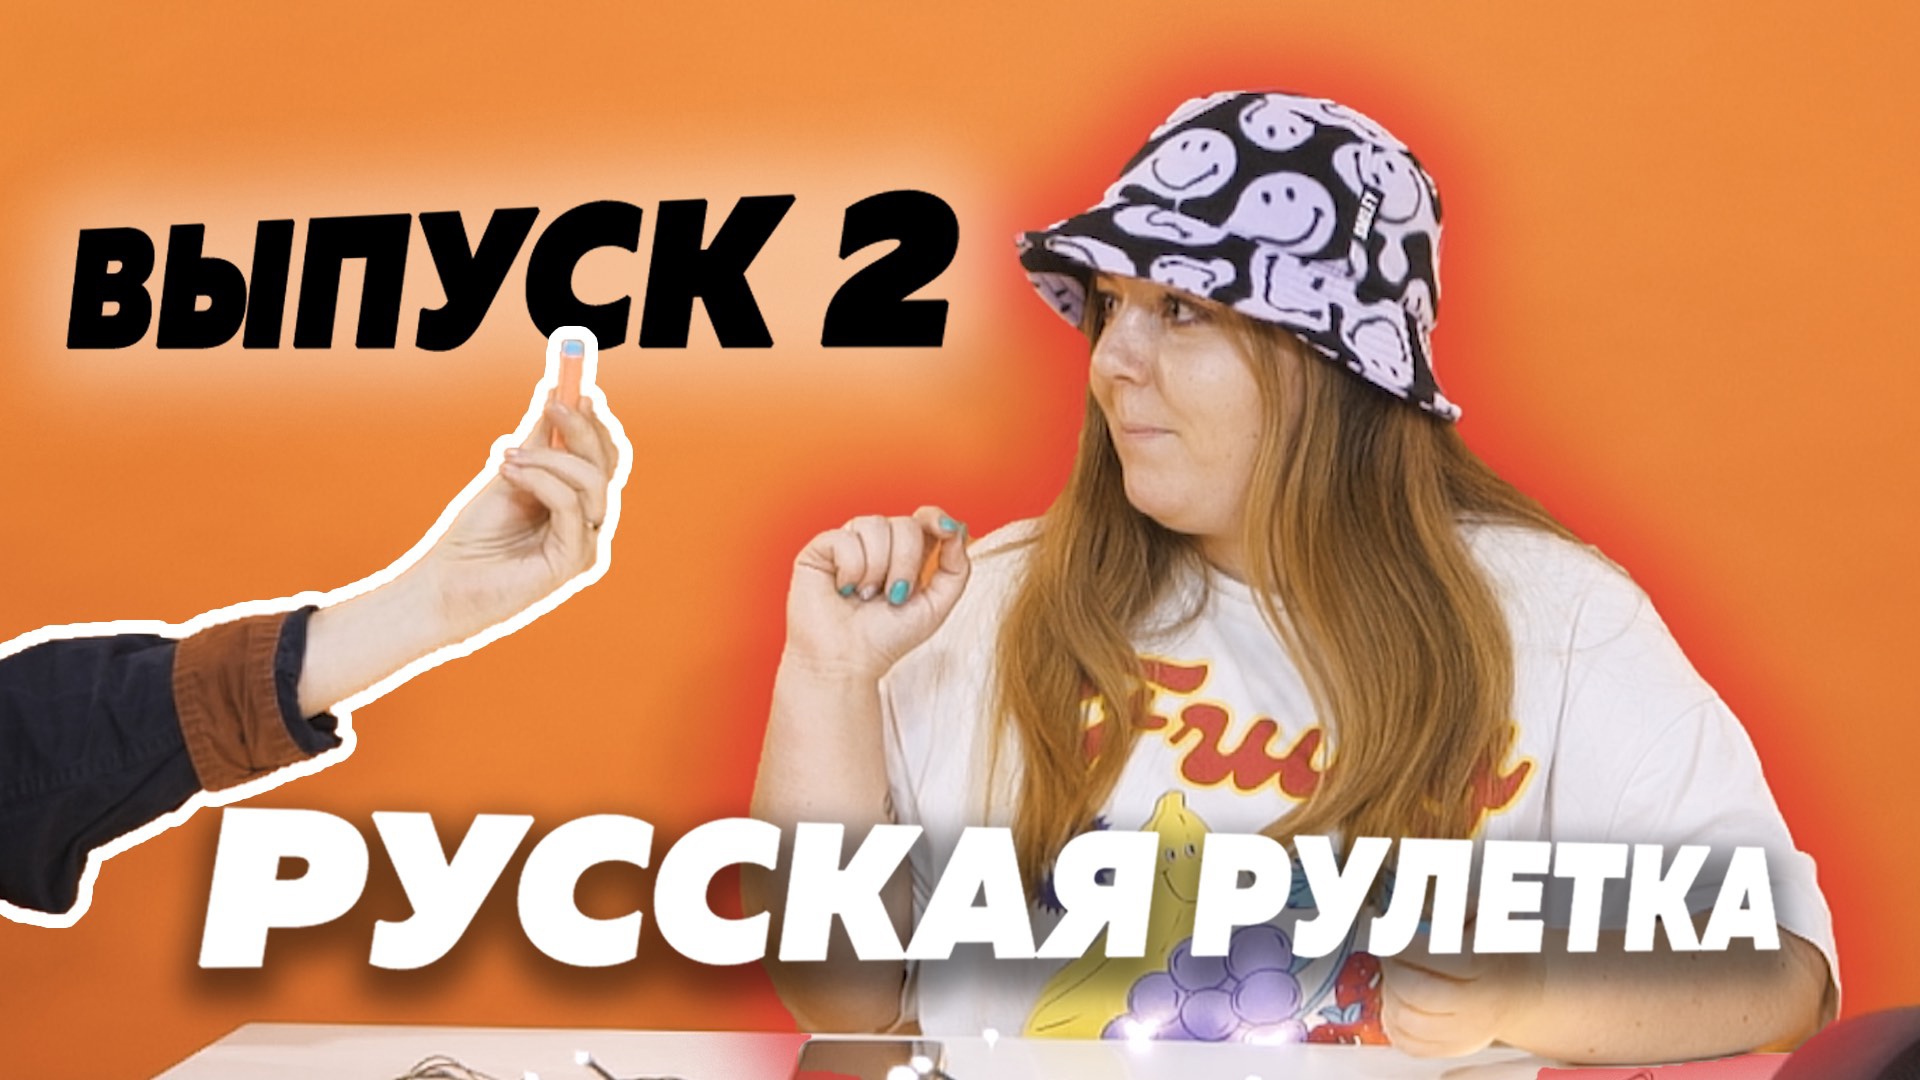 Шоу русская рулетка онлайн играть бесплатно игры карты пасьянсы